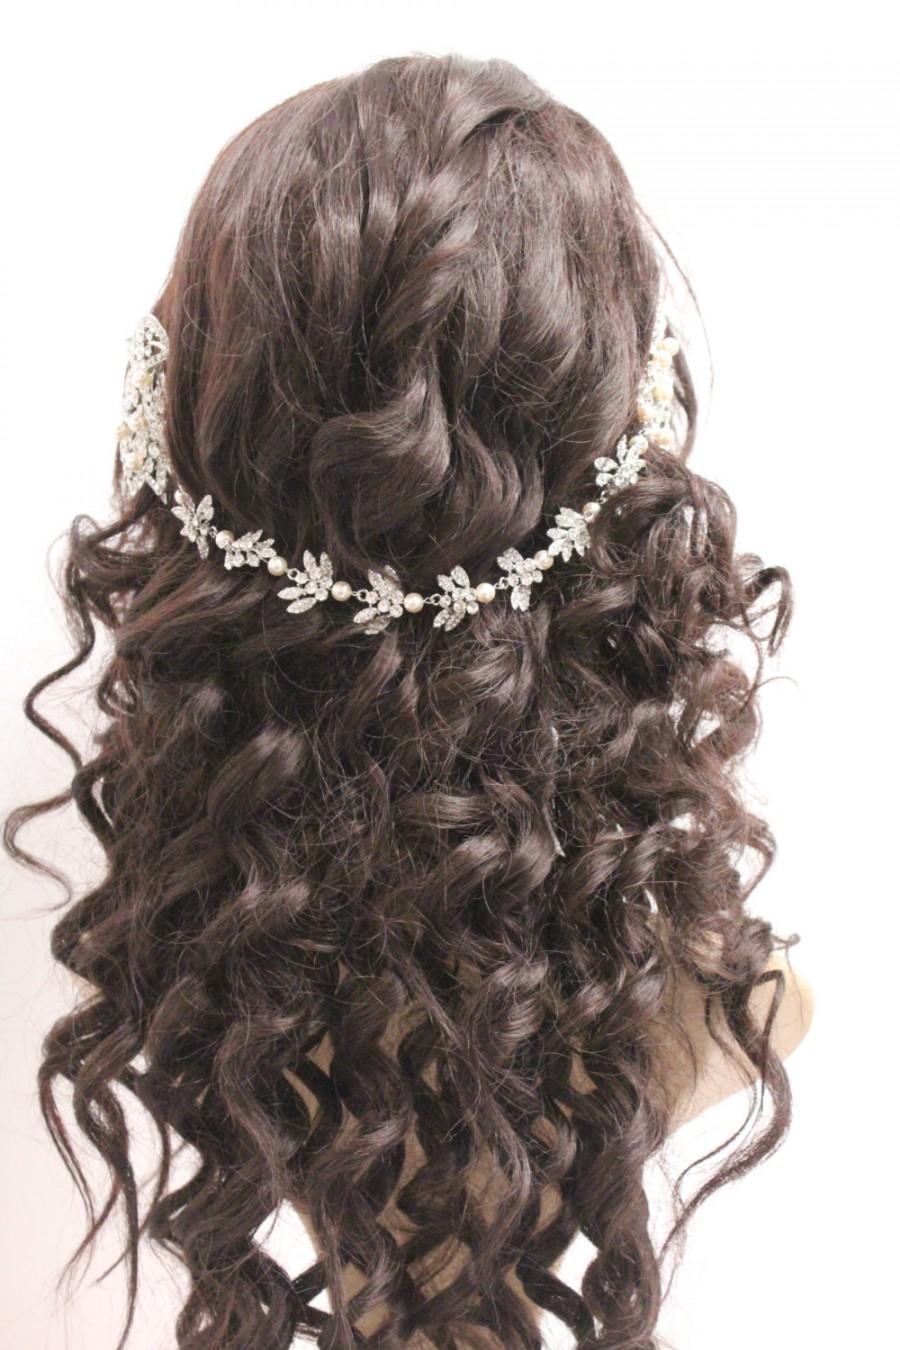 زفاف - Wedding hair chain wedding hair vine wedding headpiece wedding hair jewelry wedding headband wedding hair piece bridal hair chain Wedding